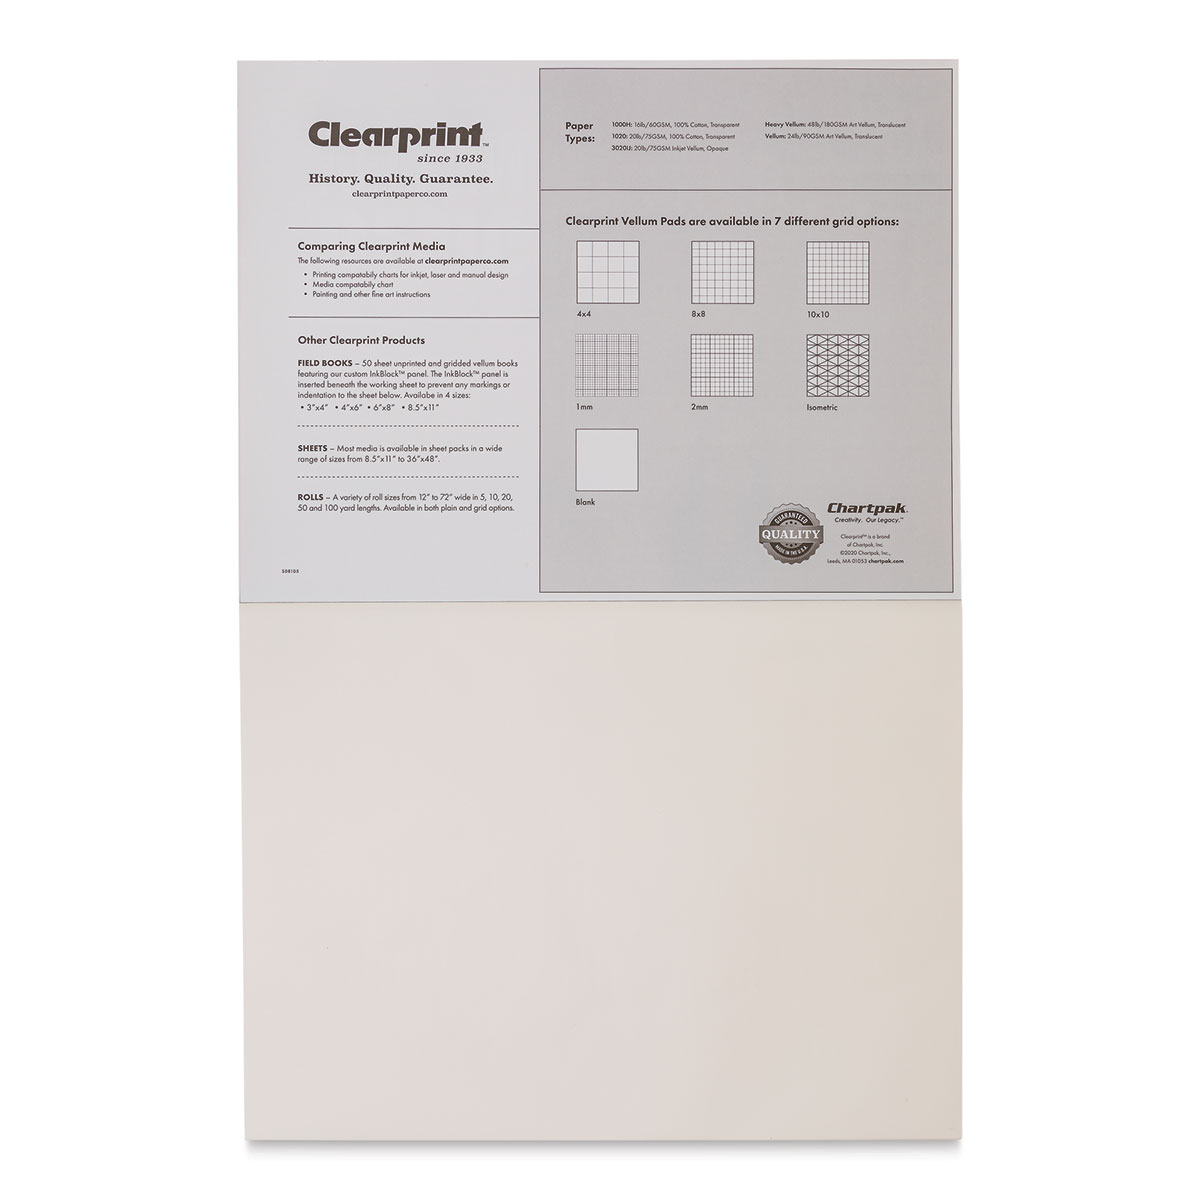 Clearprint Vellum 1000H 100 Sheets 11x17 Unprinted